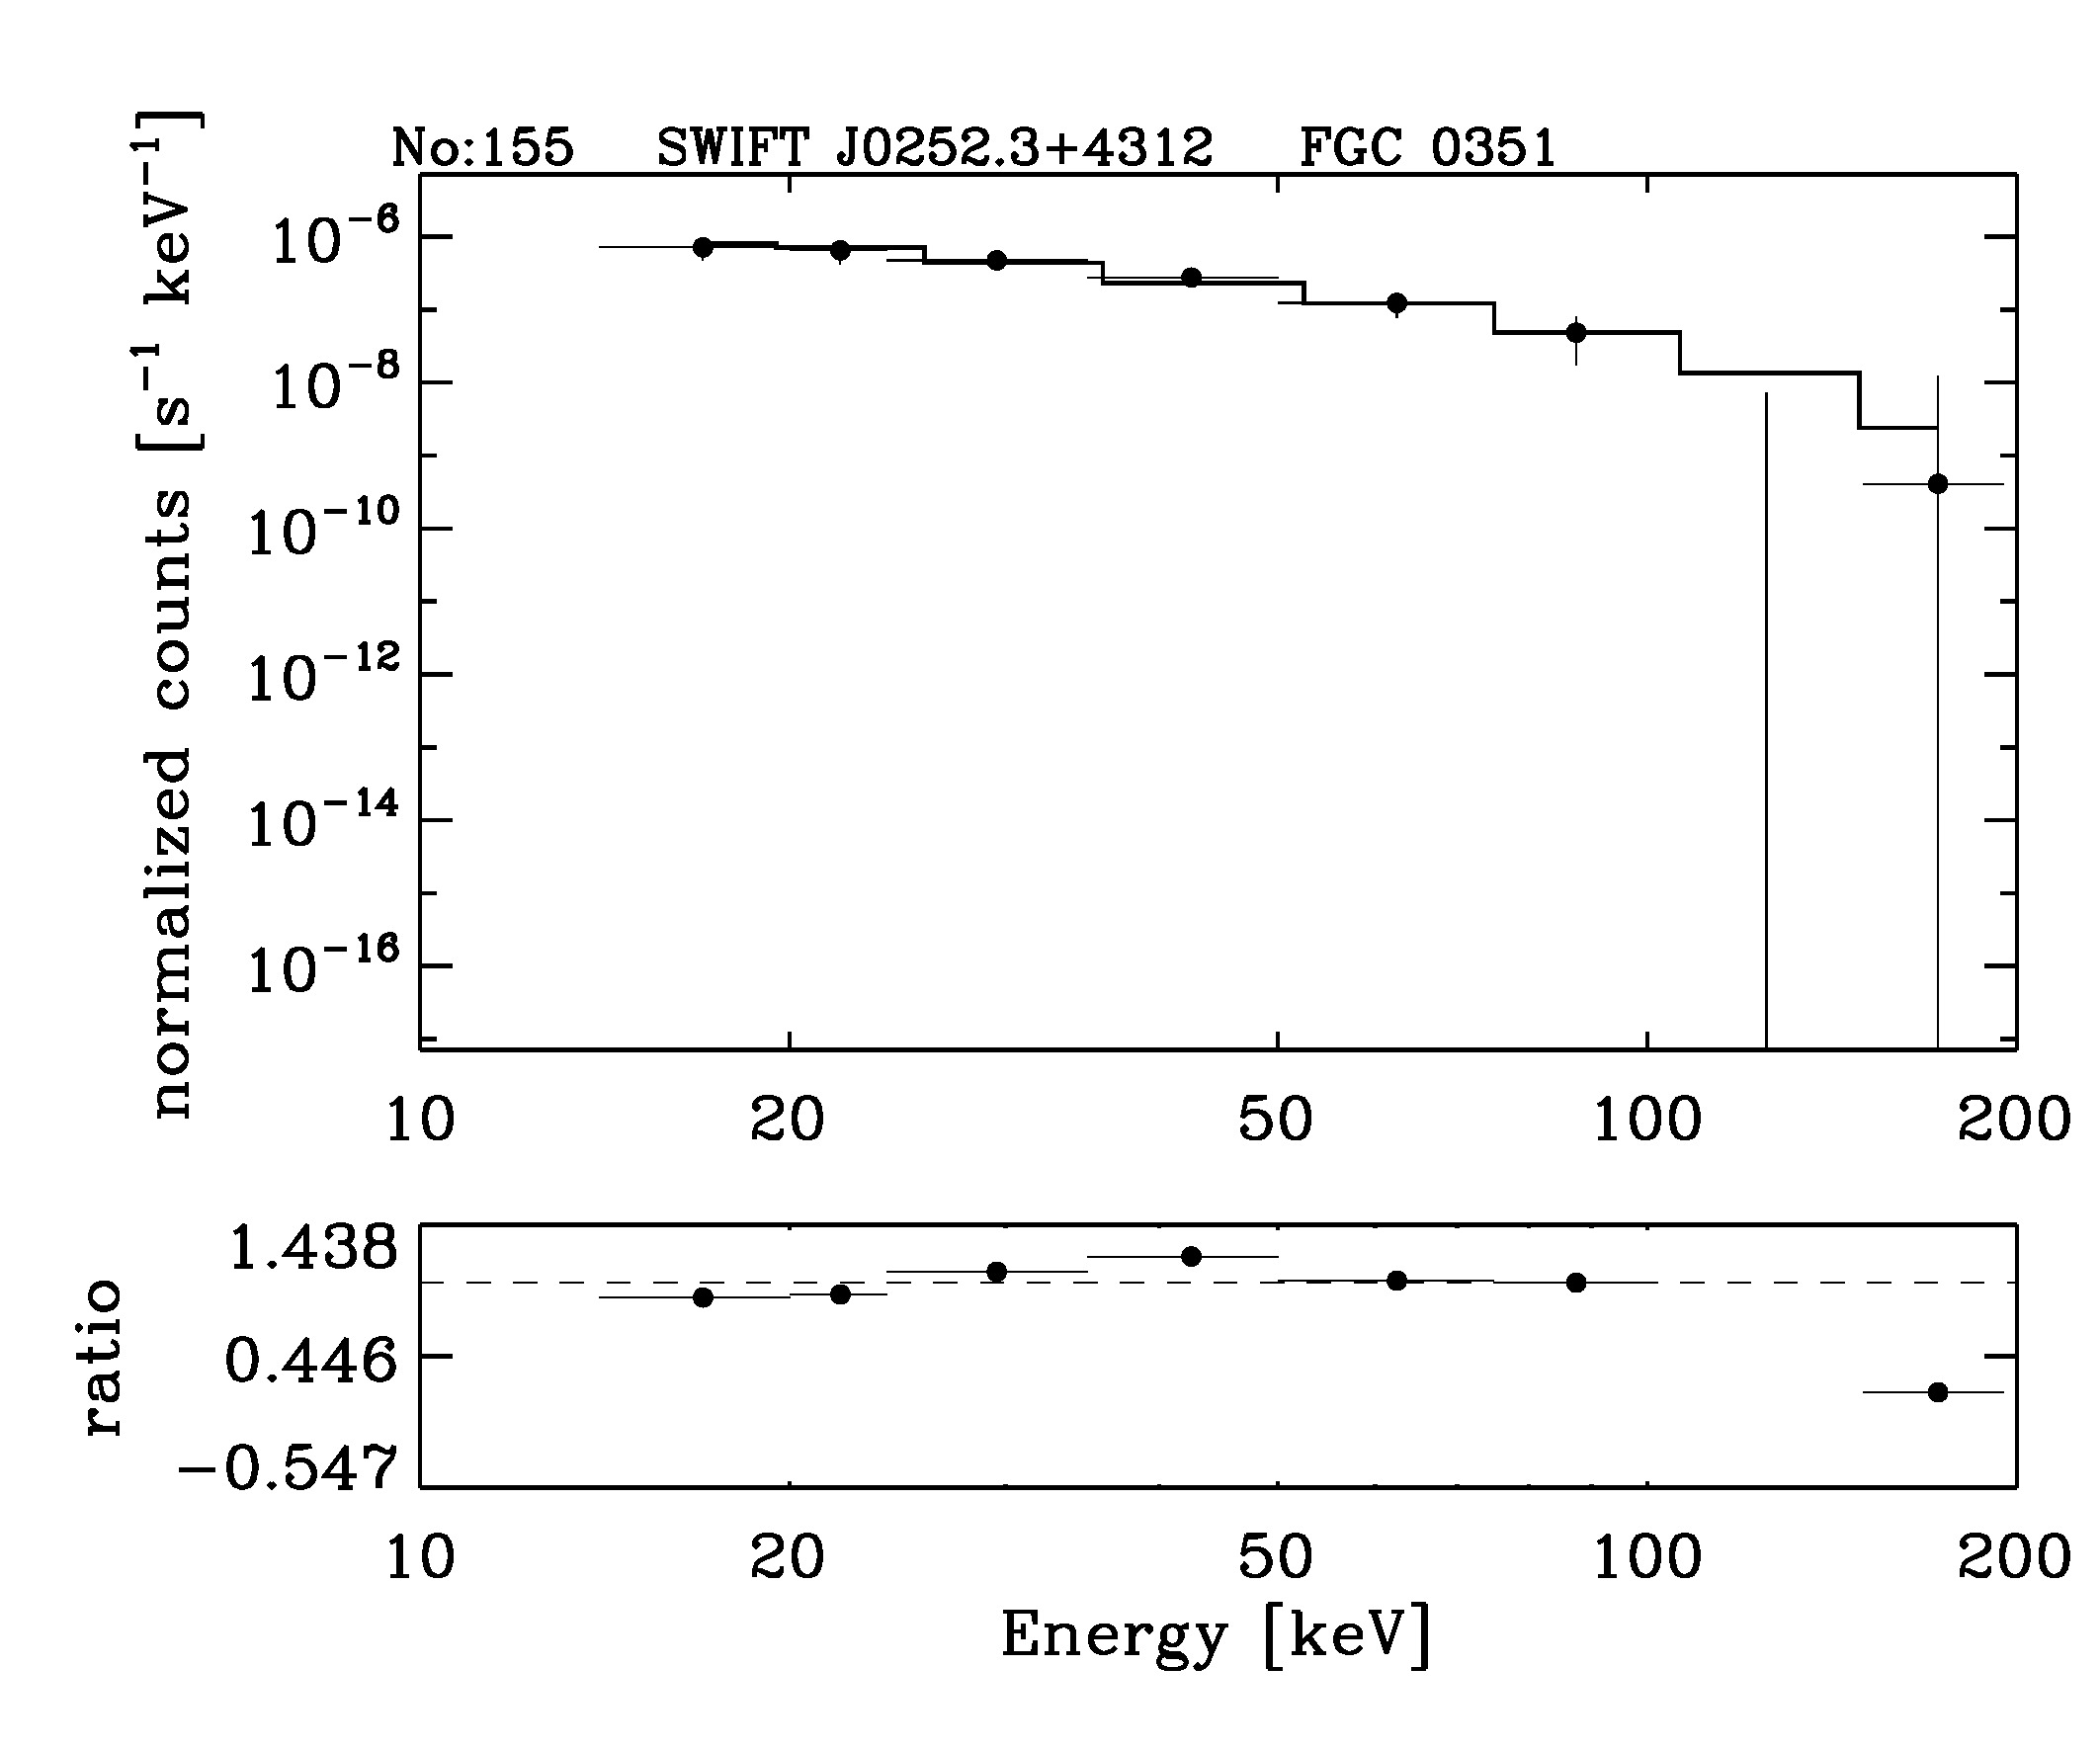 BAT Spectrum for SWIFT J0252.3+4312